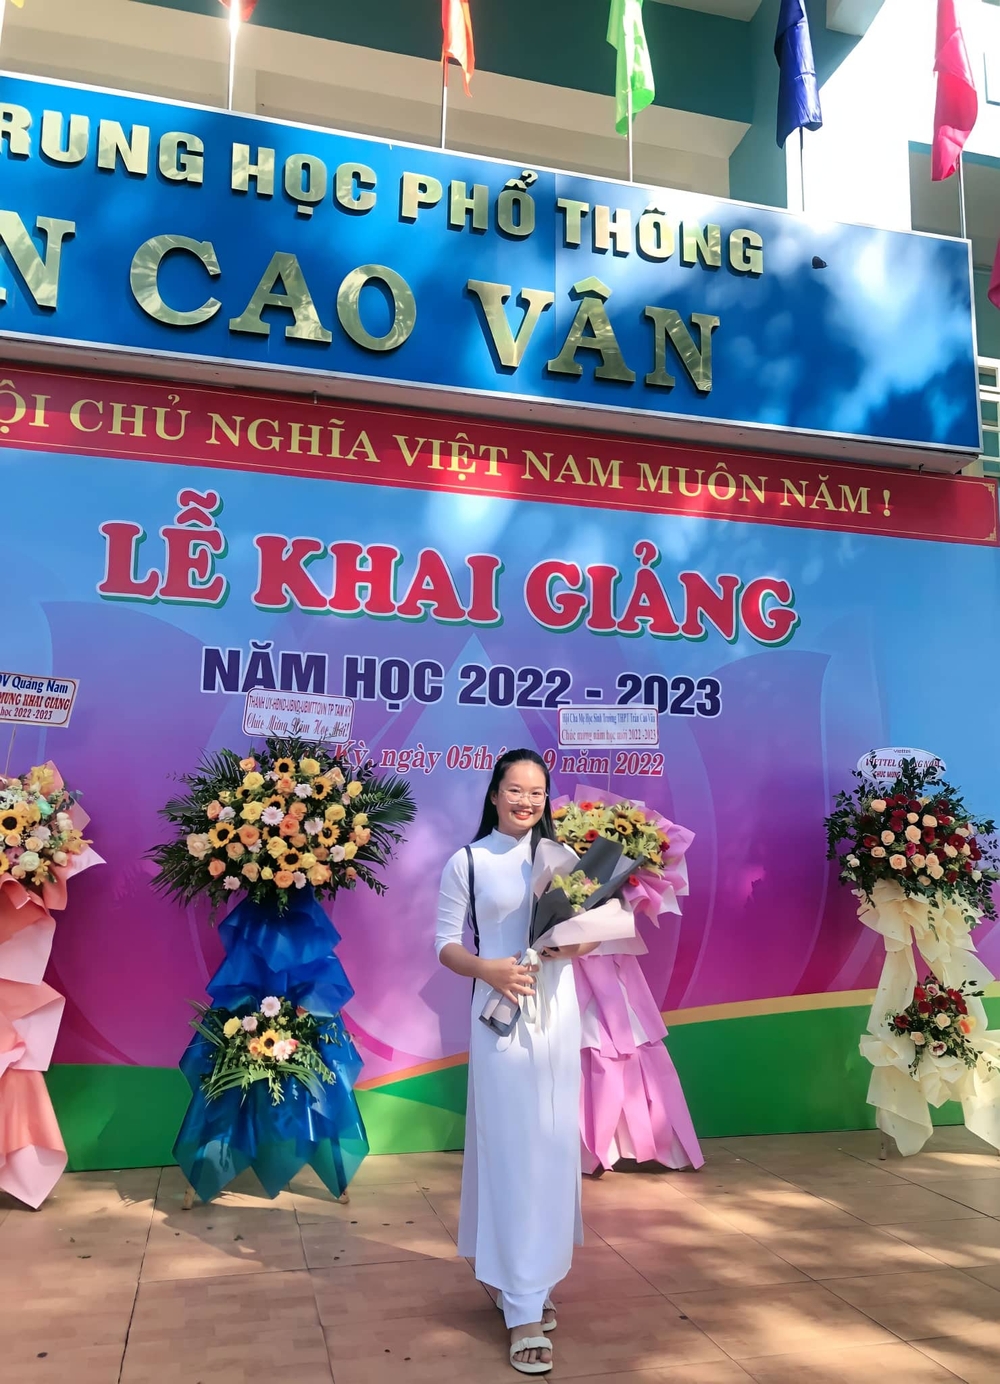 Nữ sinh Quảng Nam chia sẻ bí quyết đỗ học bổng 4 trường THPT tại Mỹ - Ảnh 2.